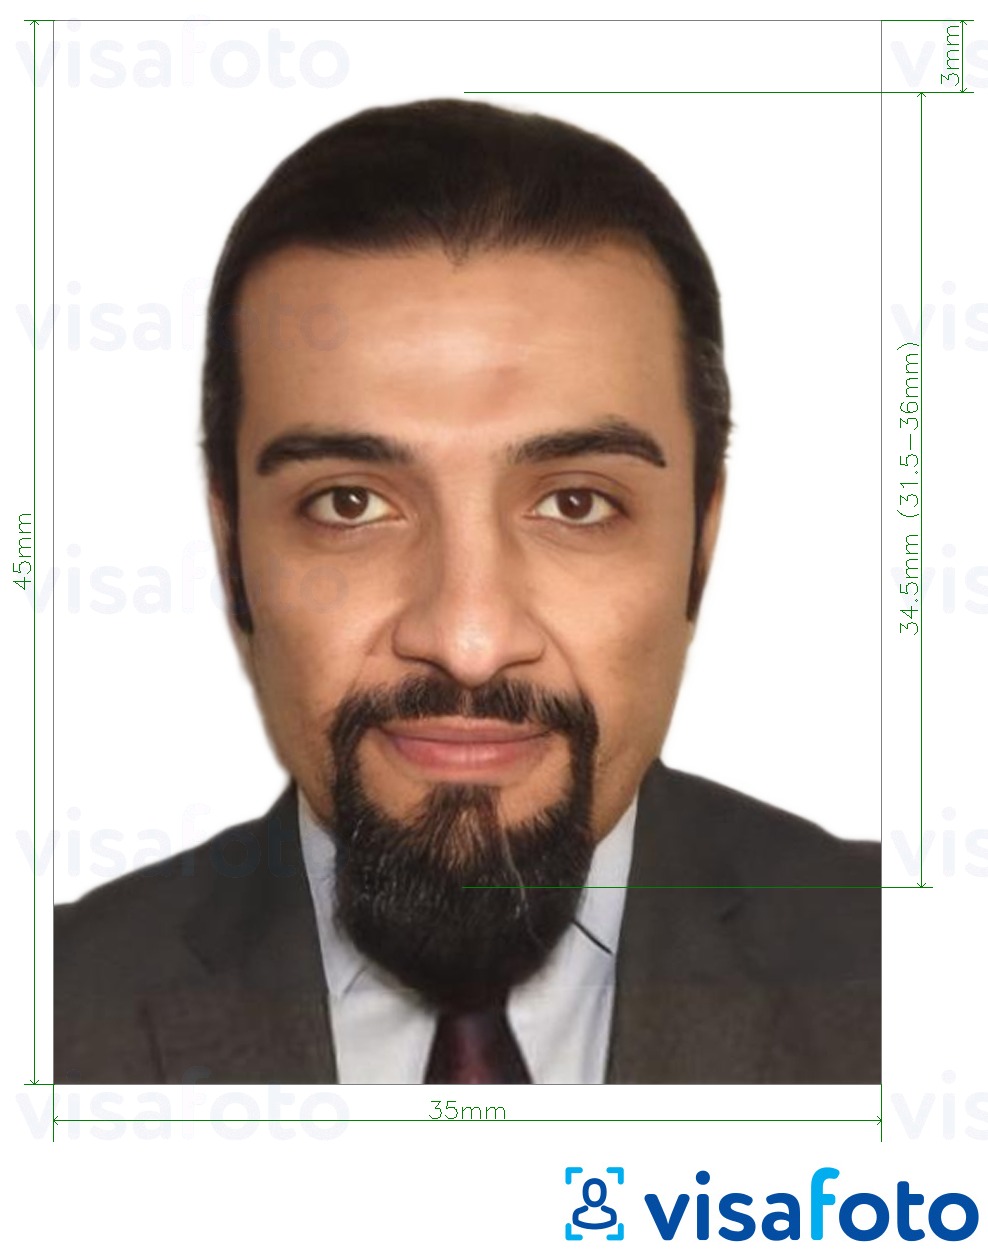 Exemple de foto per a Etàpia visa electrònica en línia 35x45 mm (3.5x4.5 cm) amb la mida exacta especificada